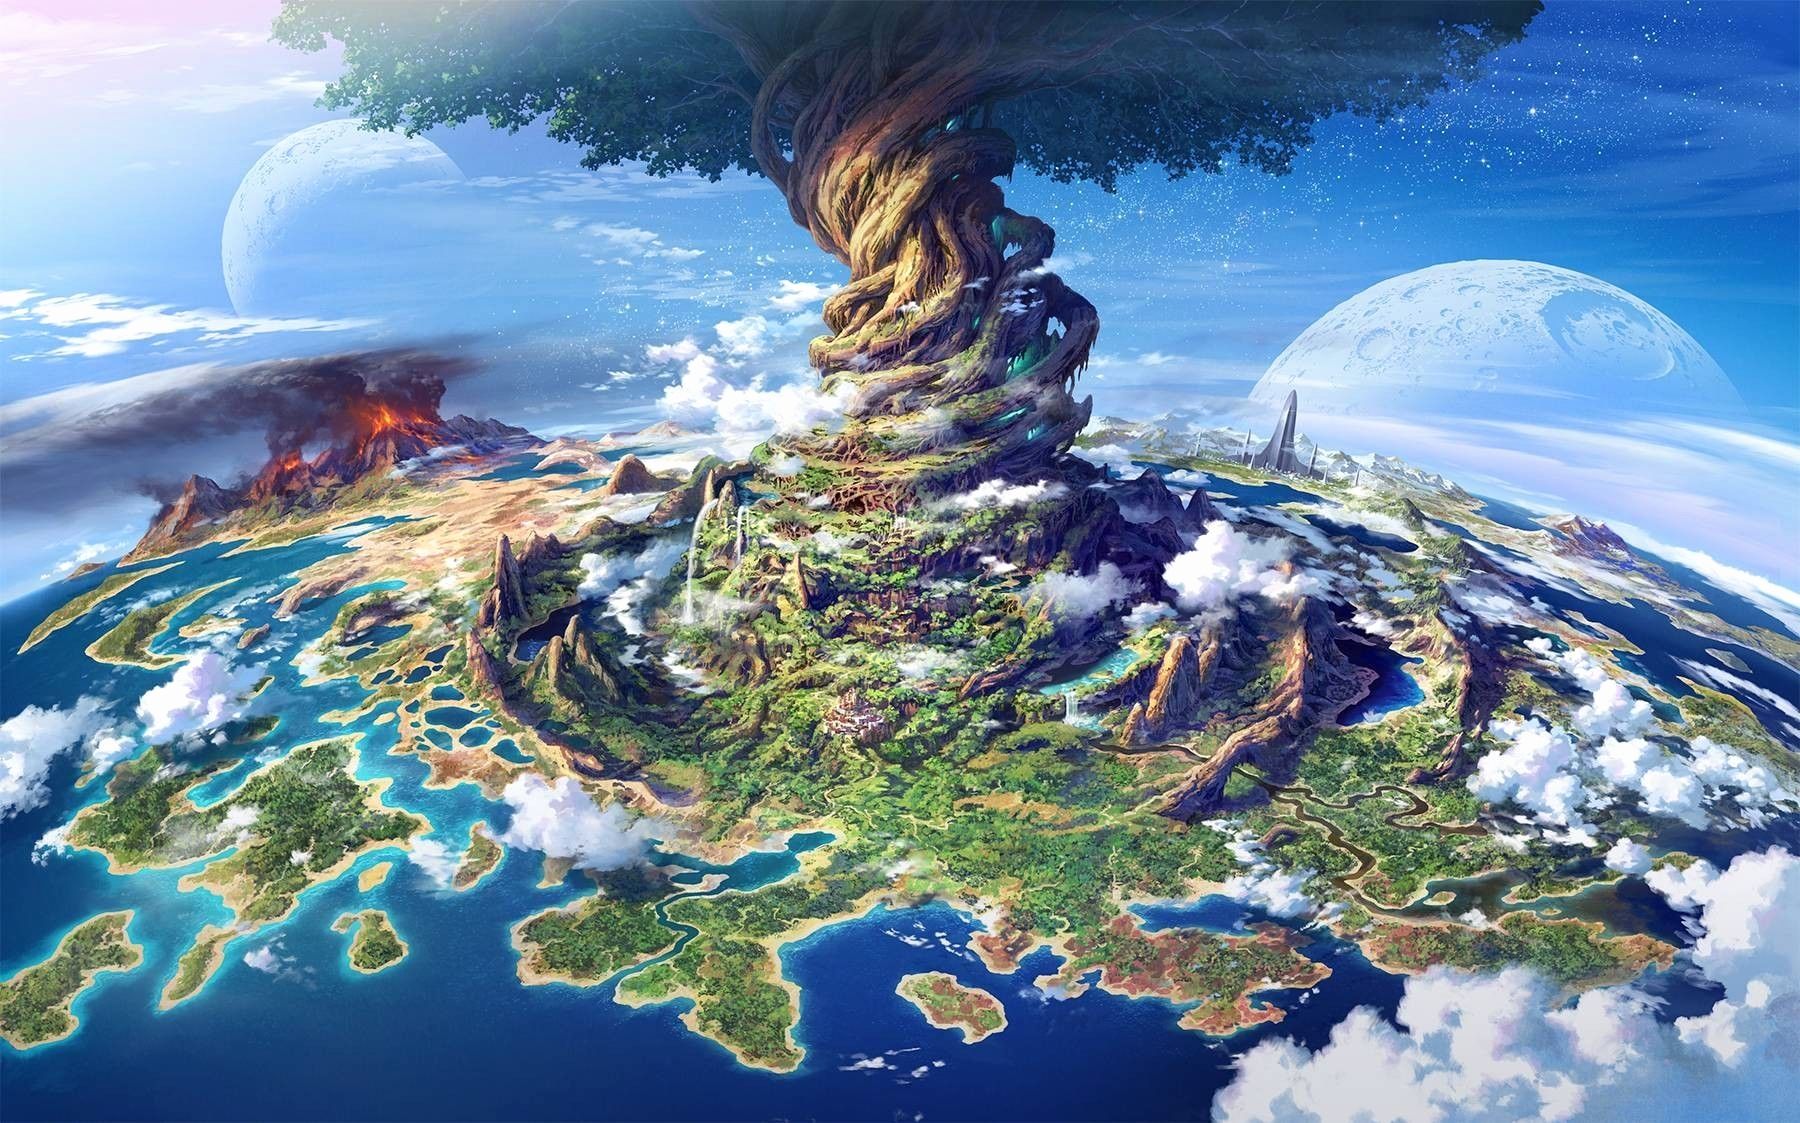 Anime Fantasy Landscape Wallpaper Inspirational Anime Landscape Wallpaper HD Combination of The Hudson